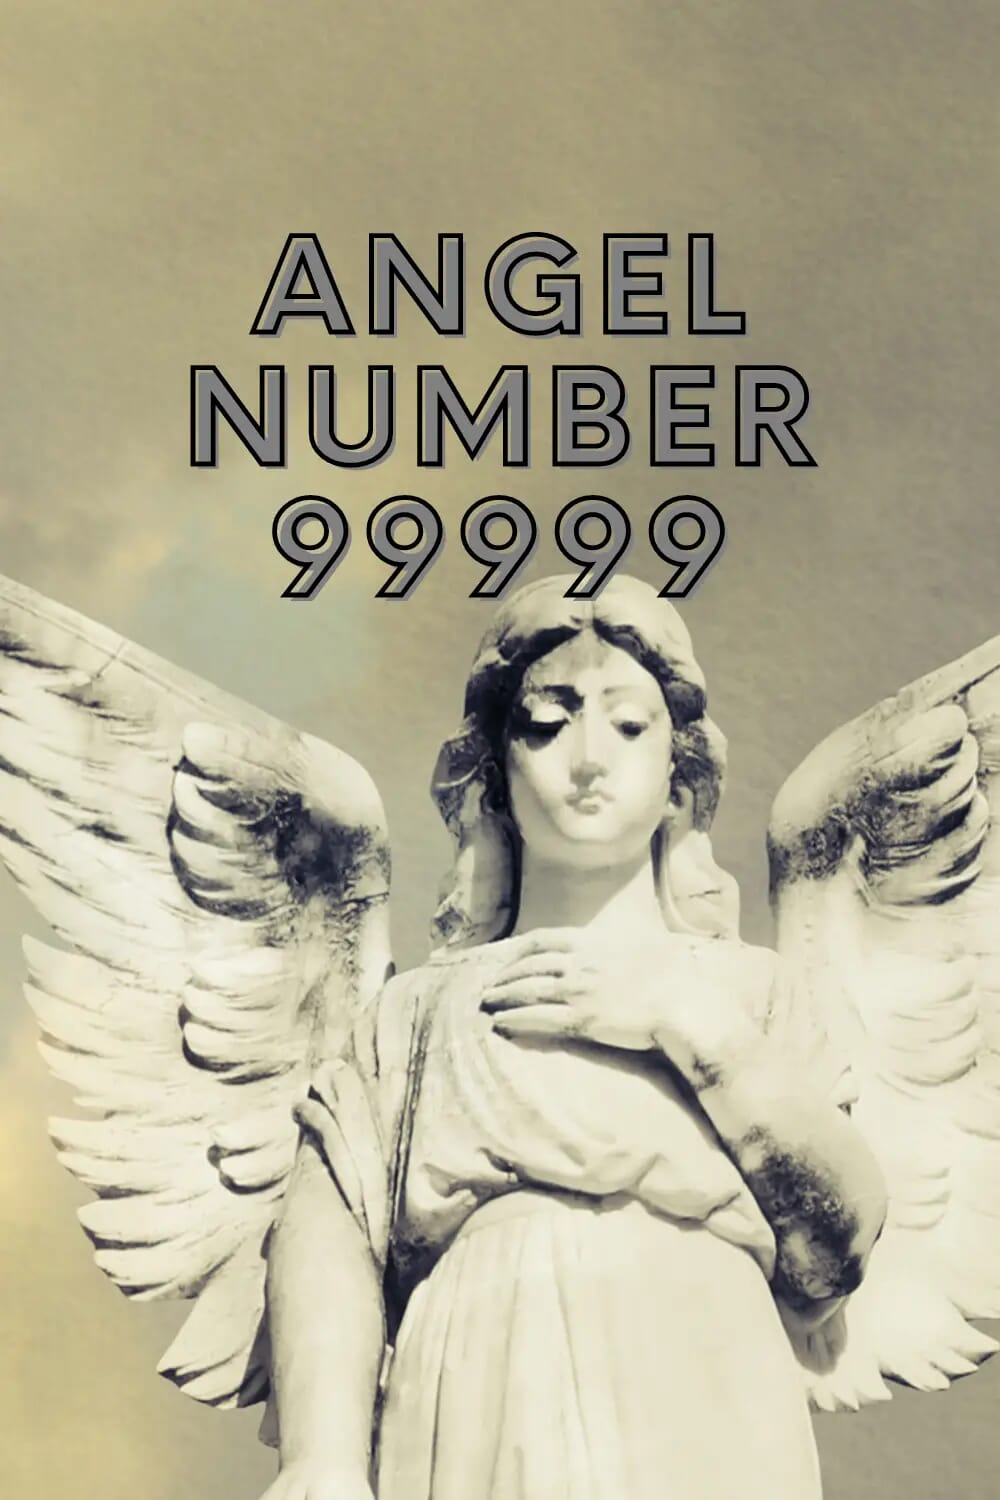 Angel Number 99999